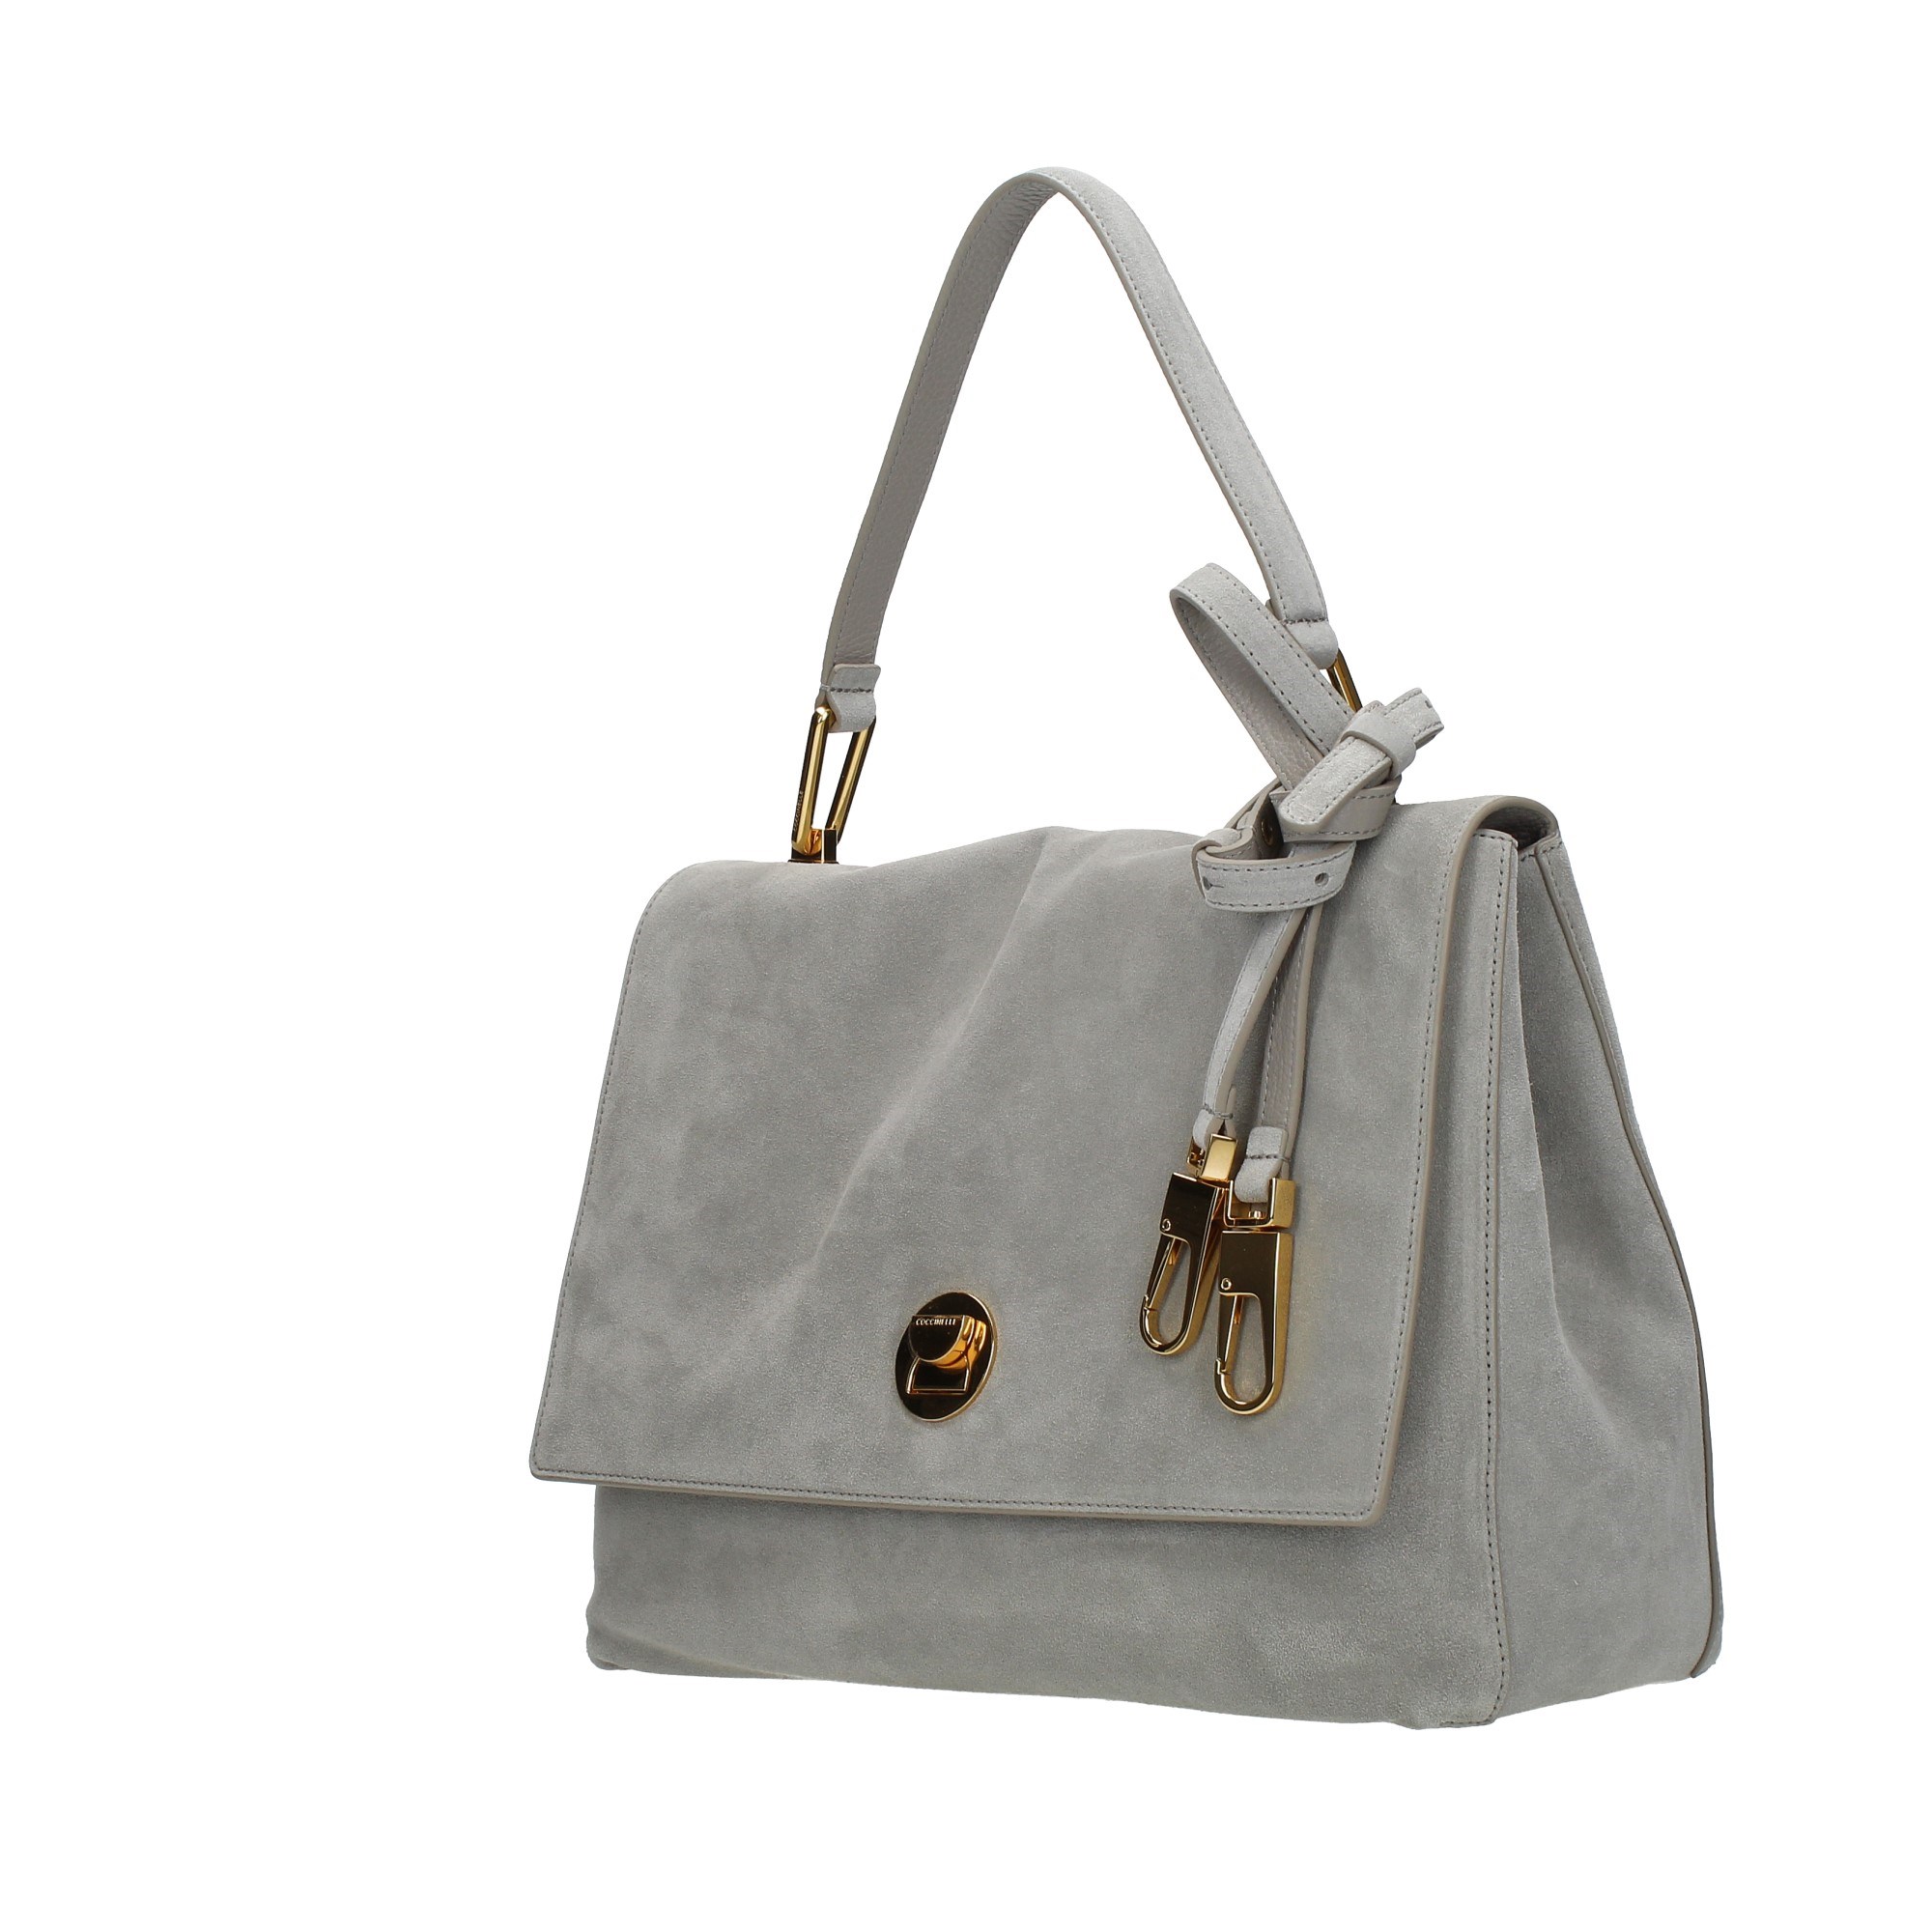 Coccinelle Accessories Women Shoulder Bags LD1 180301